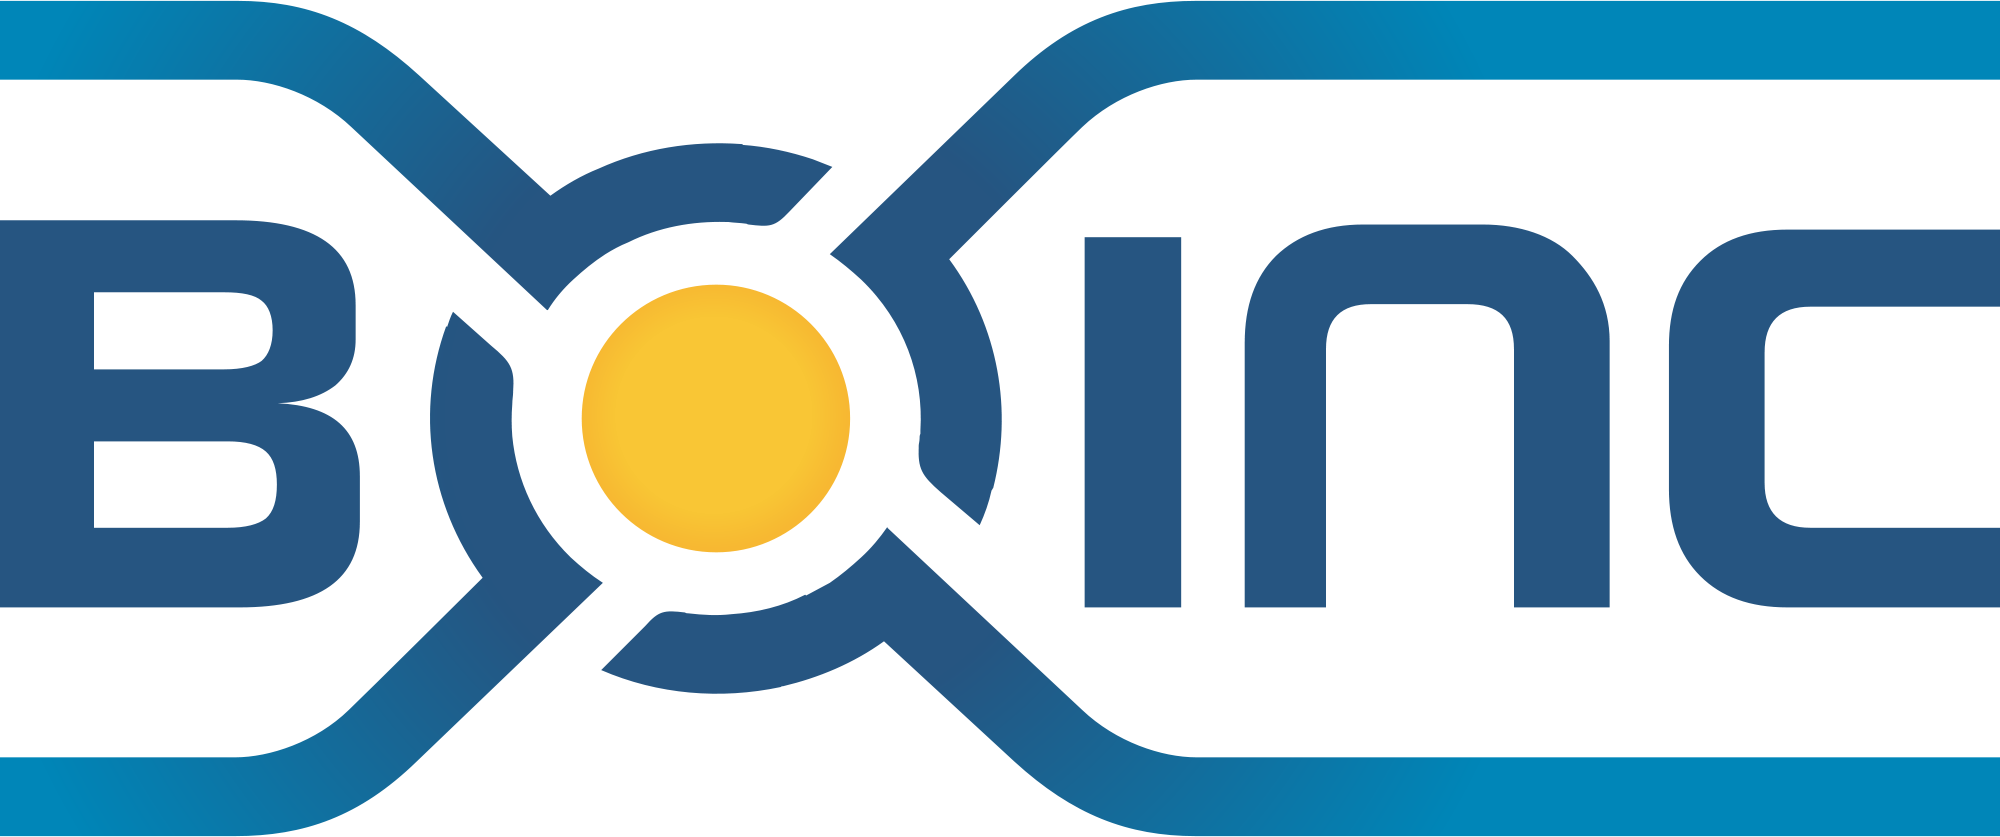 BOINC - Berkeley Open Infrastructure for Network Computing - Открытая программная платформа университета Беркли для GRID вычислений